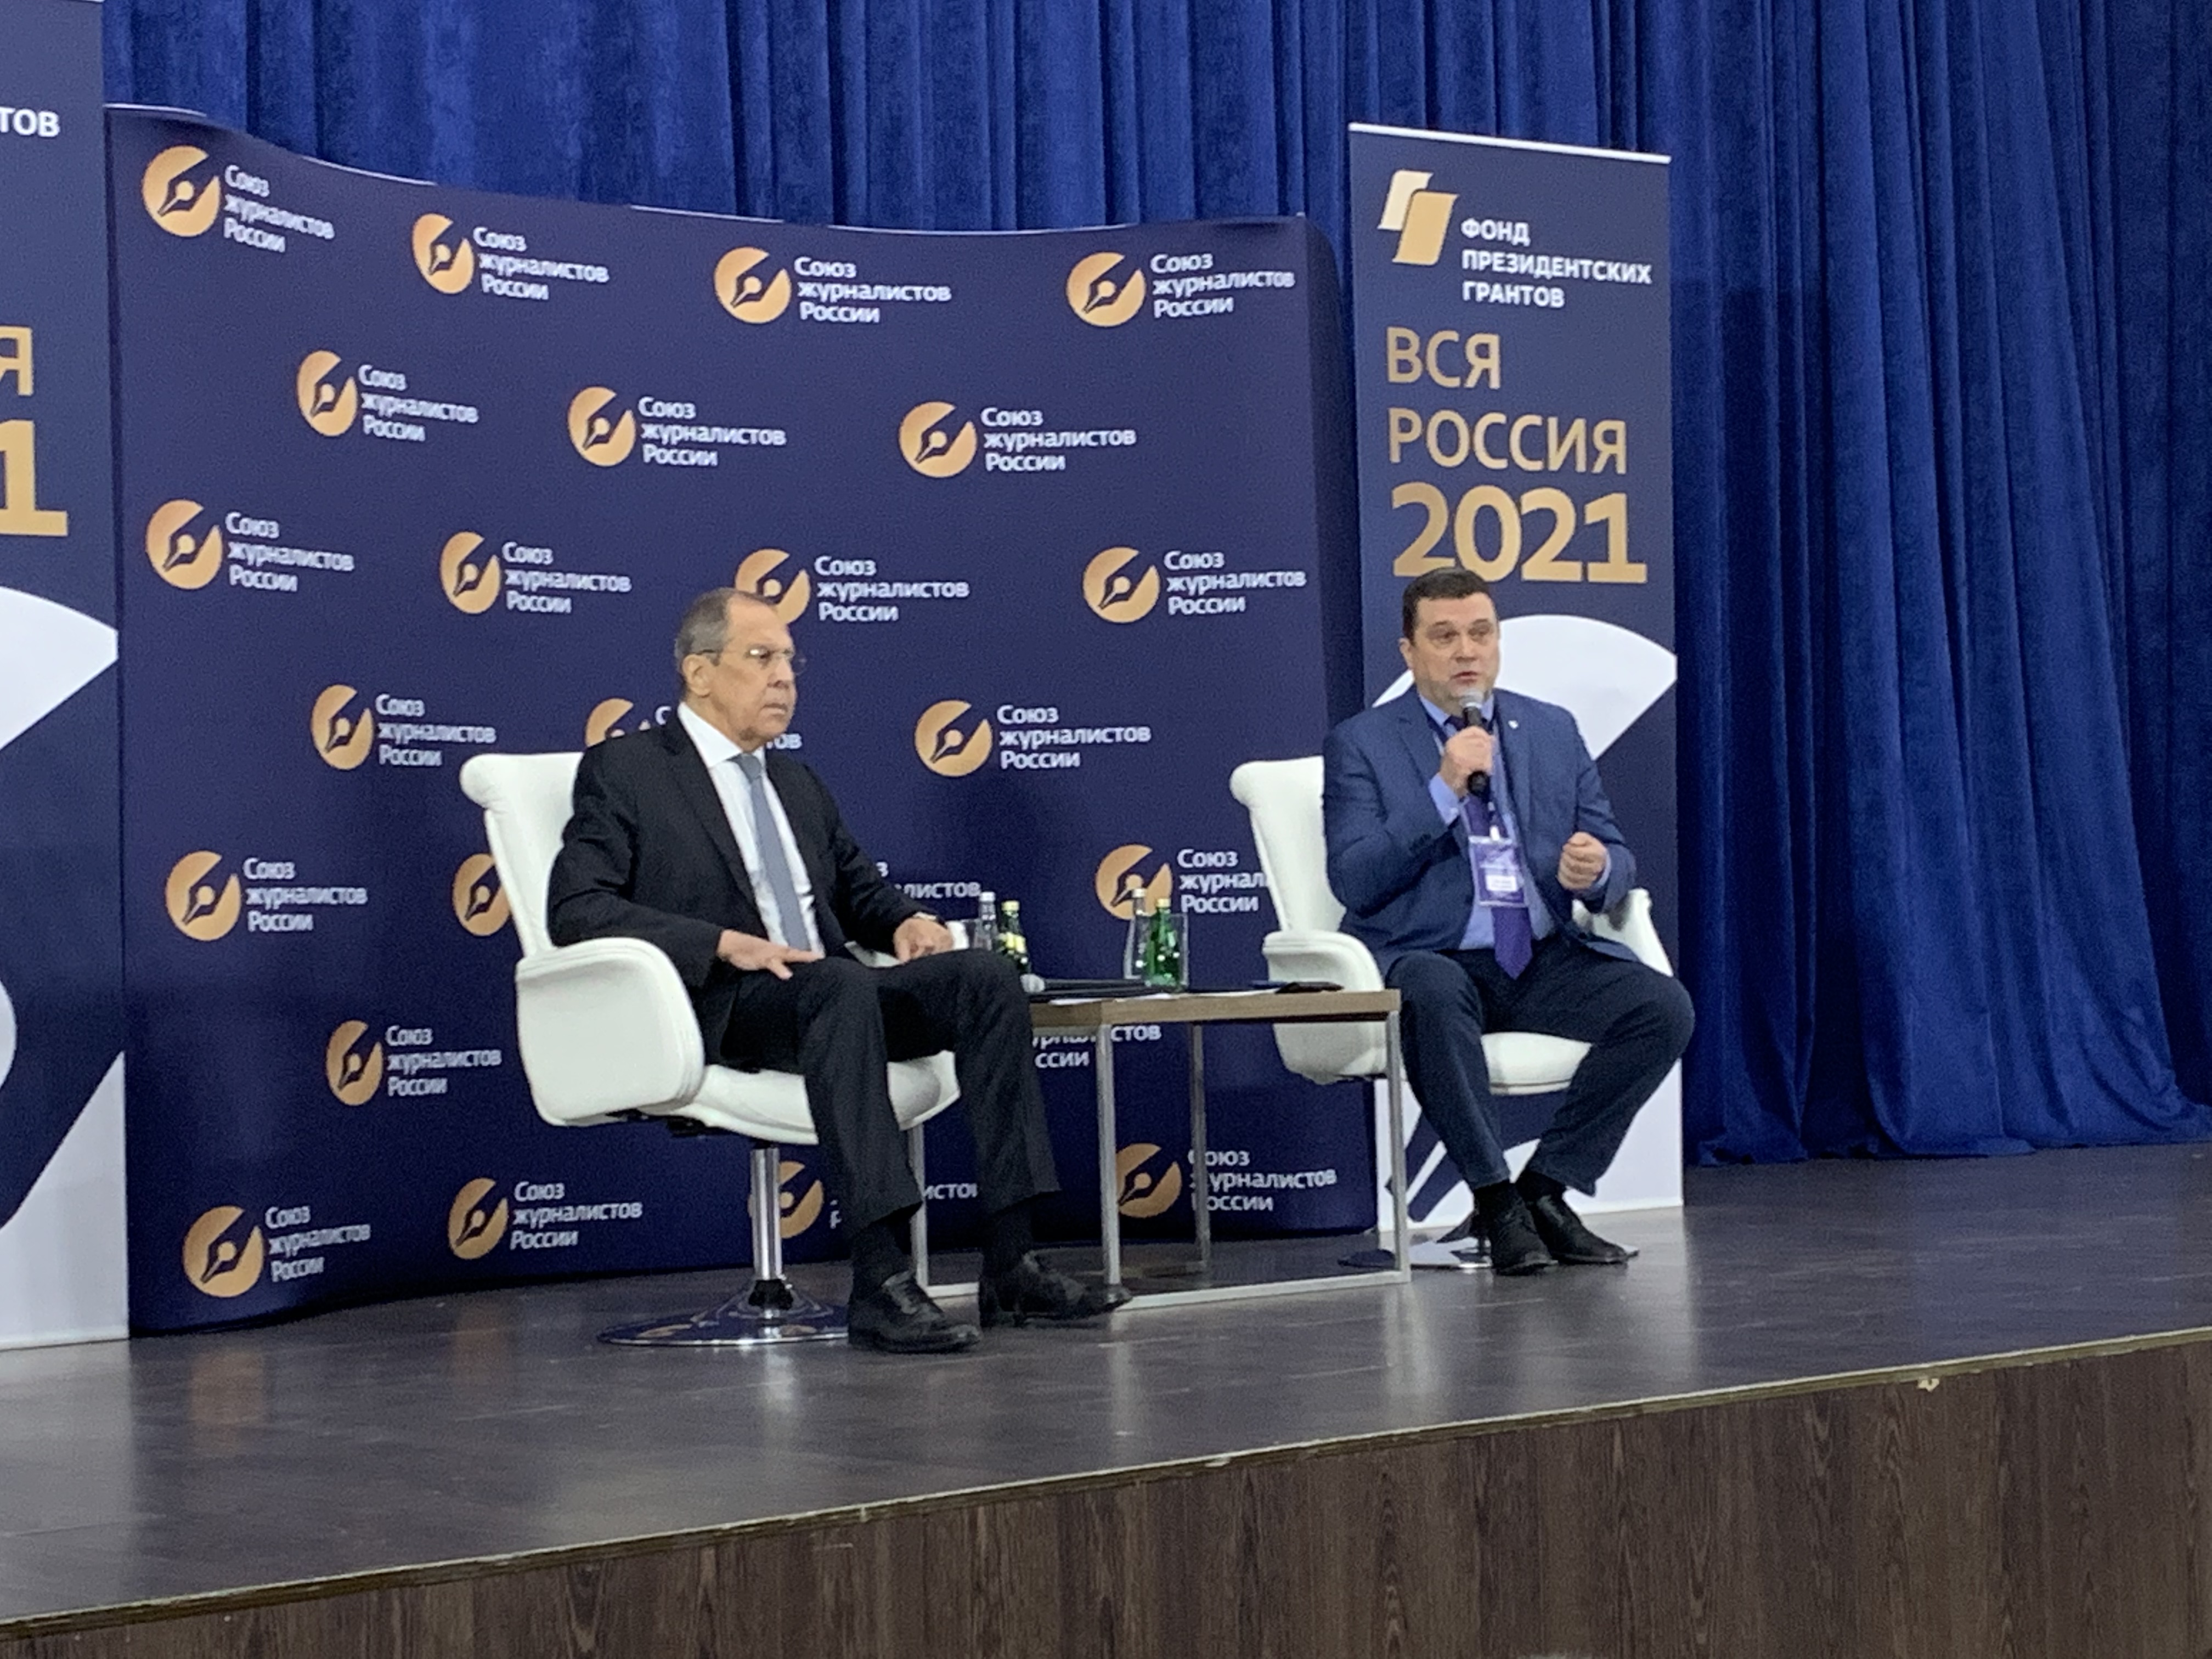 
		
		Сергей Лавров открыл форум «Вся Россия-2021» на день раньше
		
	